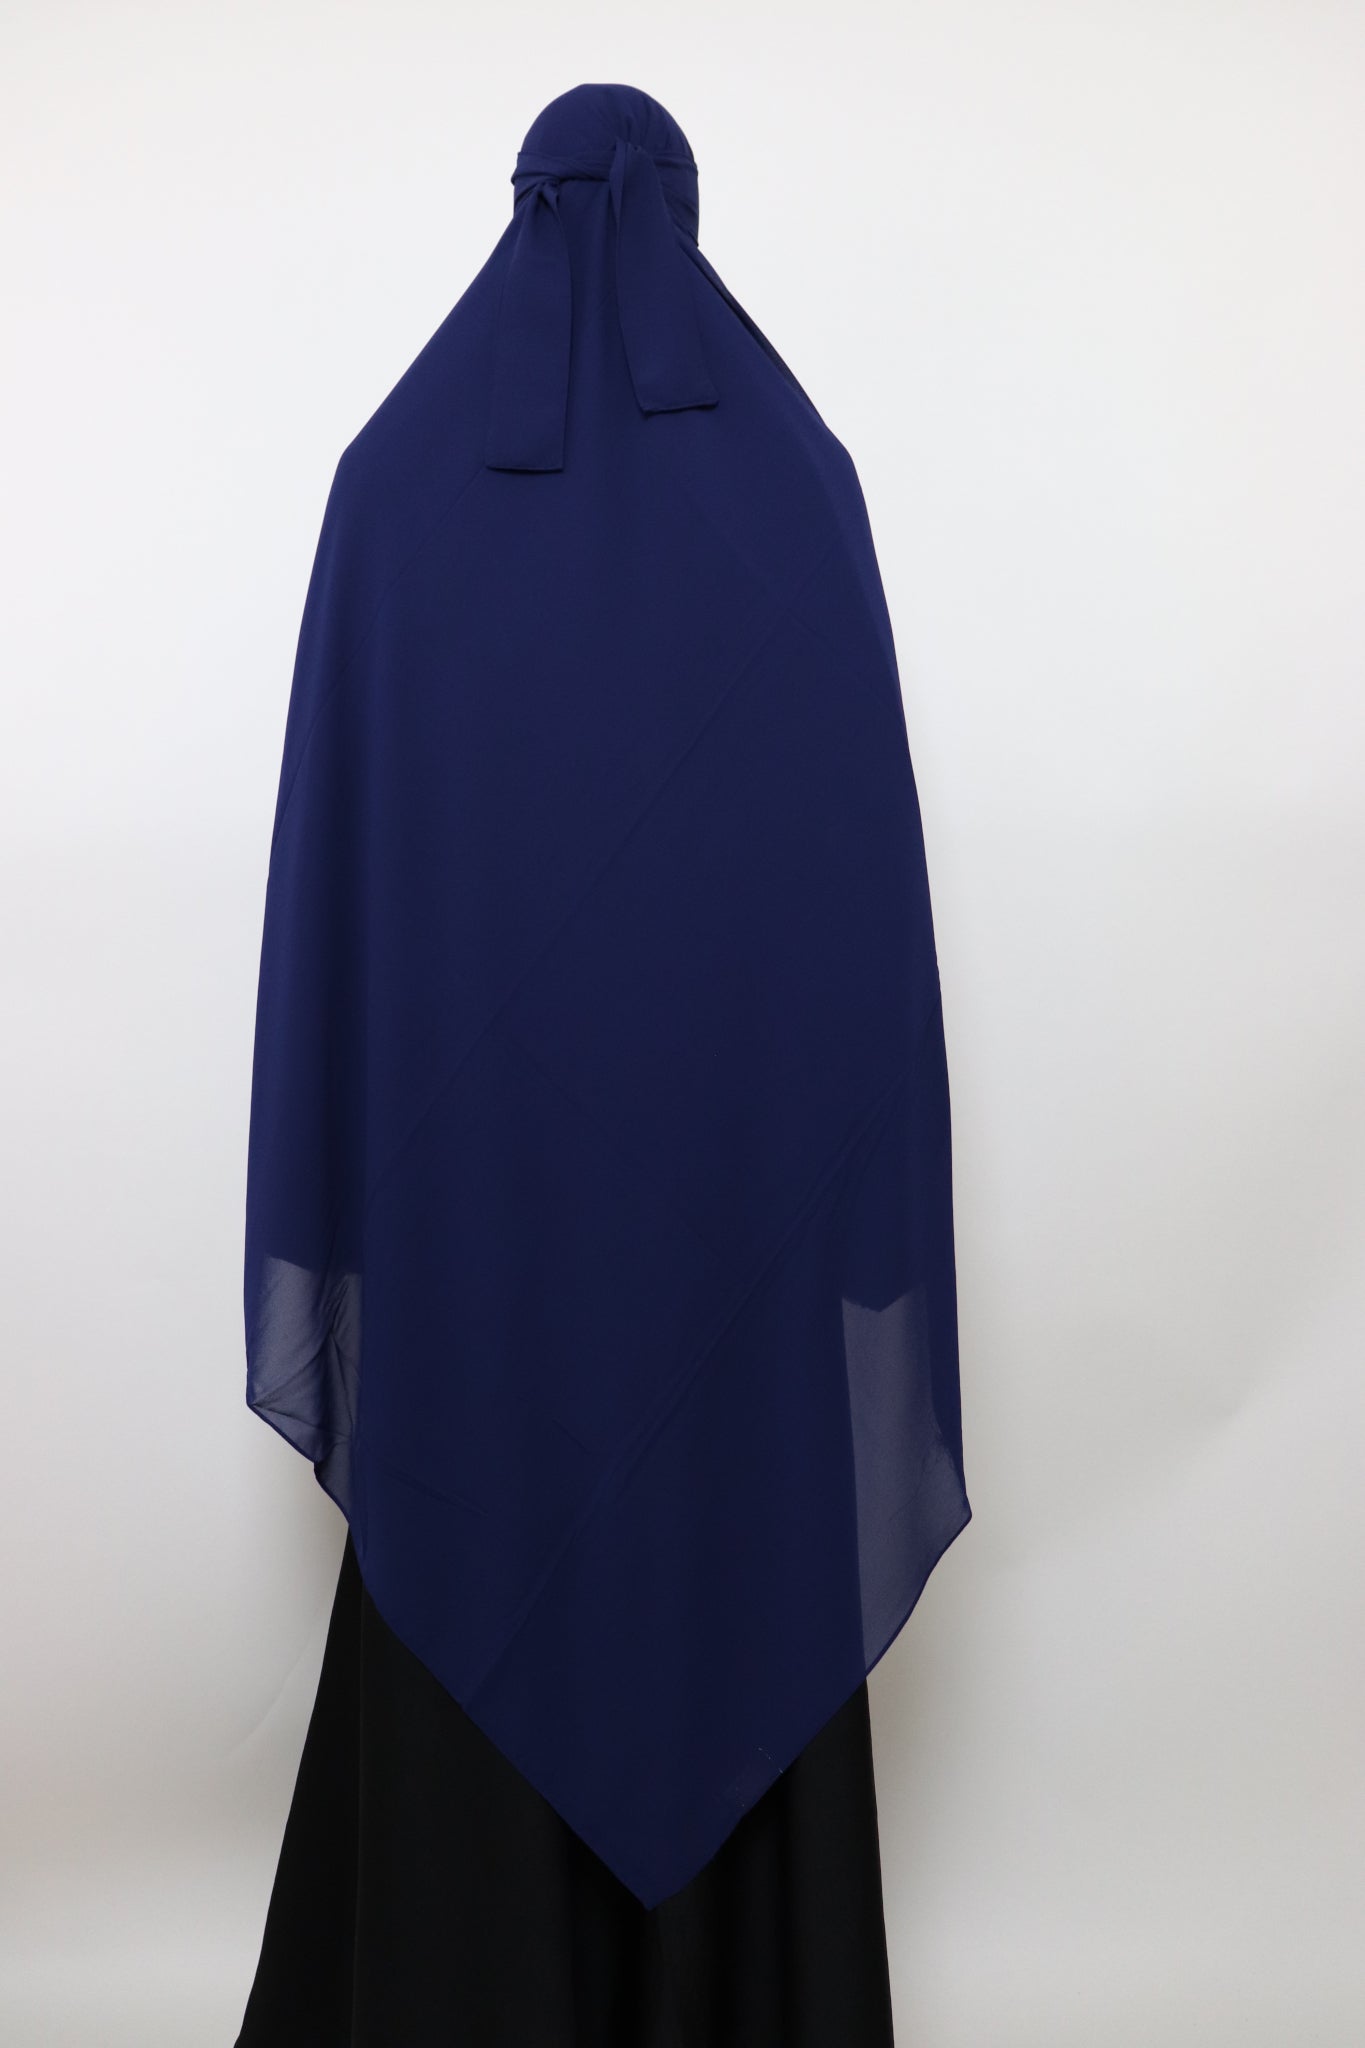 XL Premium Chiffon Hijab and Niqab Set - Navy